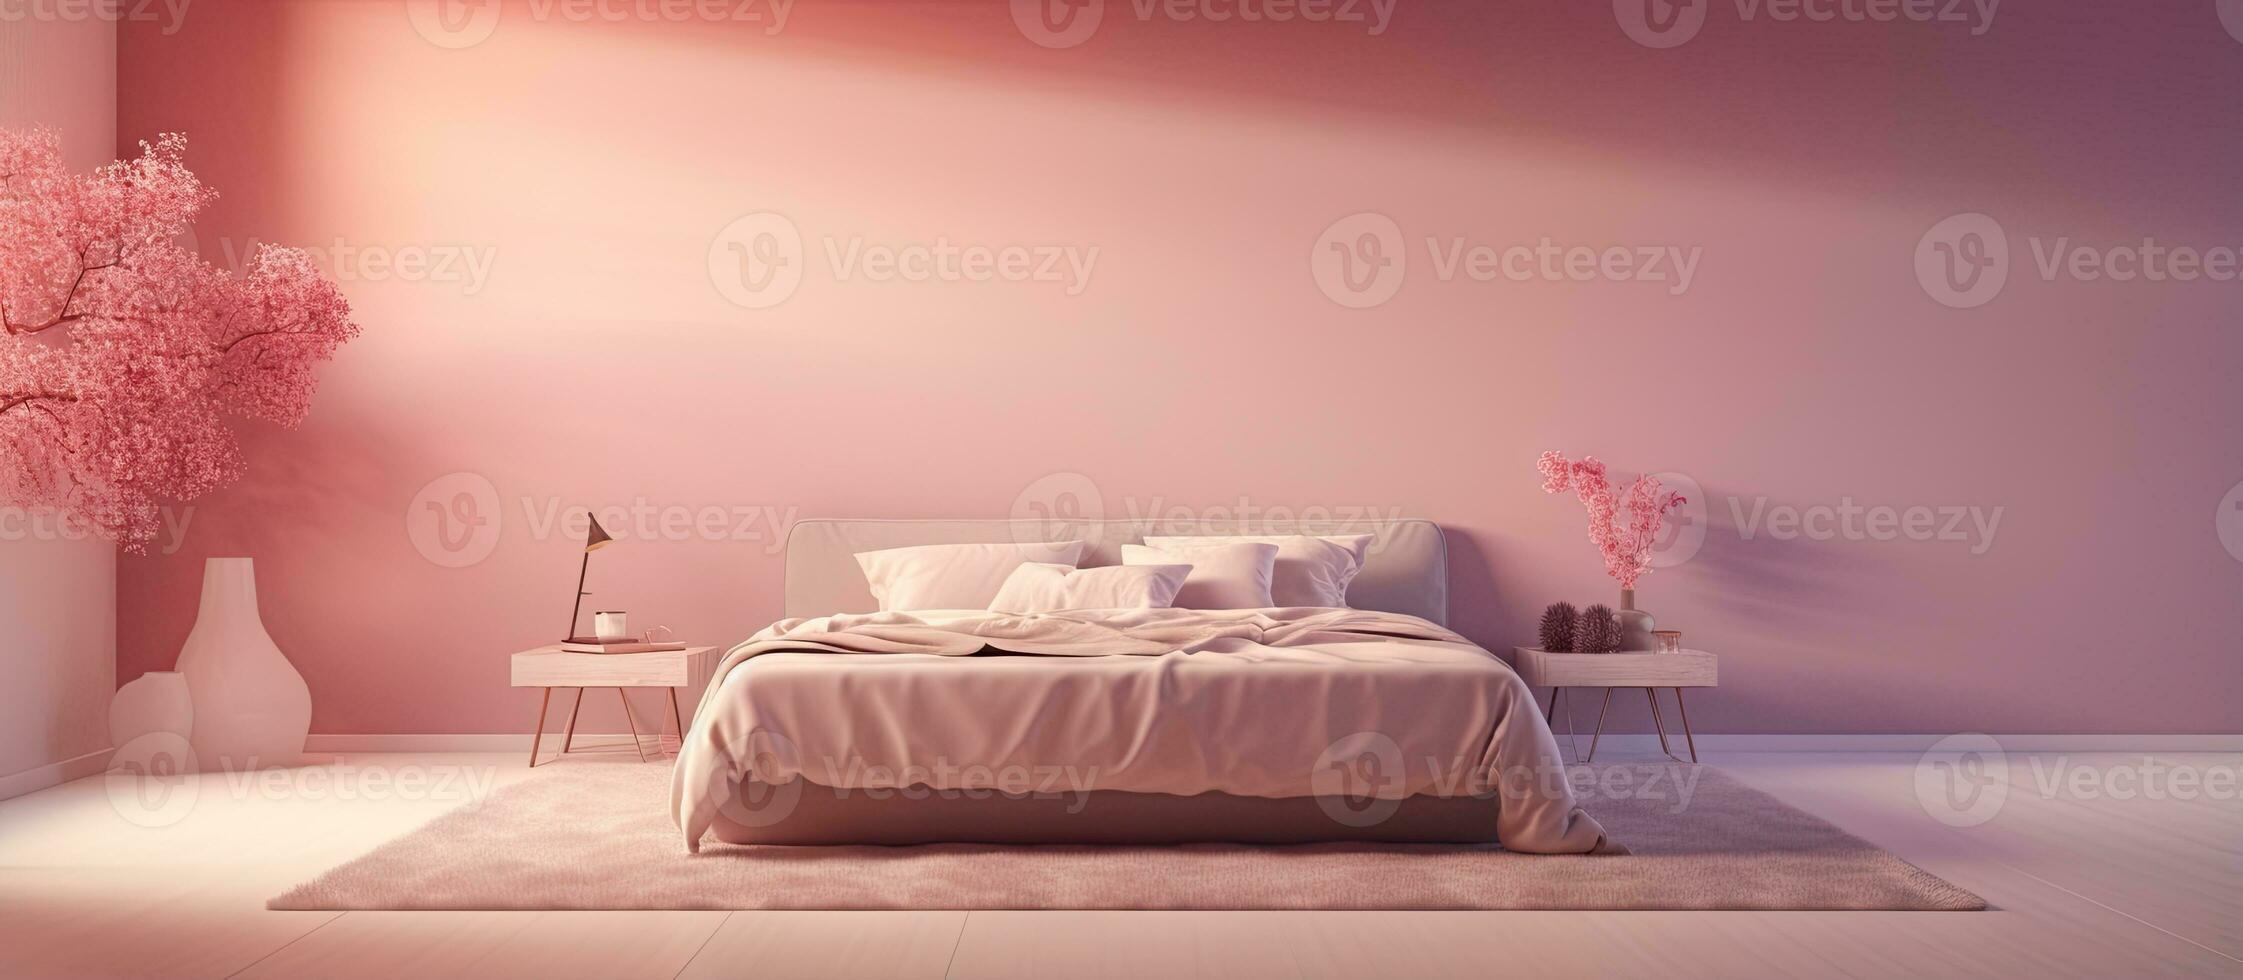 illustré lit dans une chambre intérieur photo